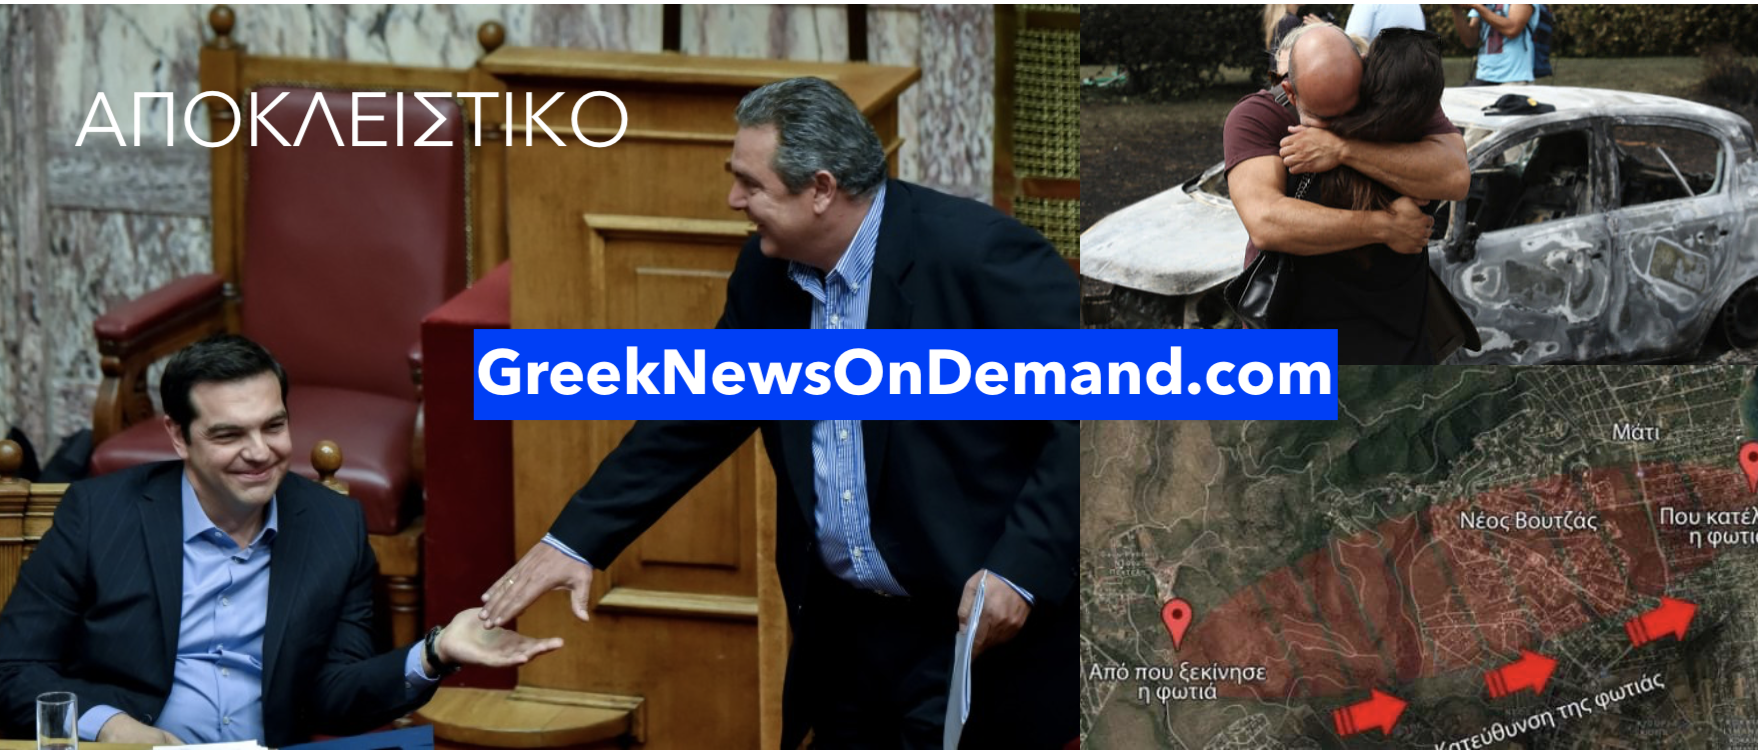 Κρύβουν το ρόλο των Αμερικανών στις φωτιές στην Ελλάδα το 2018 ο Τσίπρας κι ο Πάνος Καμμένος;;; – #Μάτι